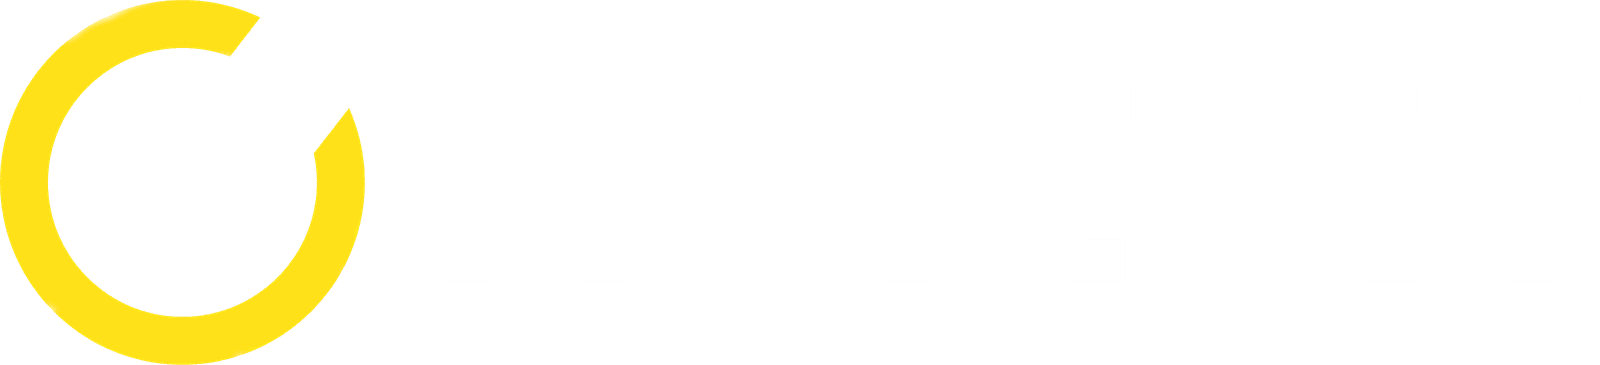 prod-norton-logo-blanco